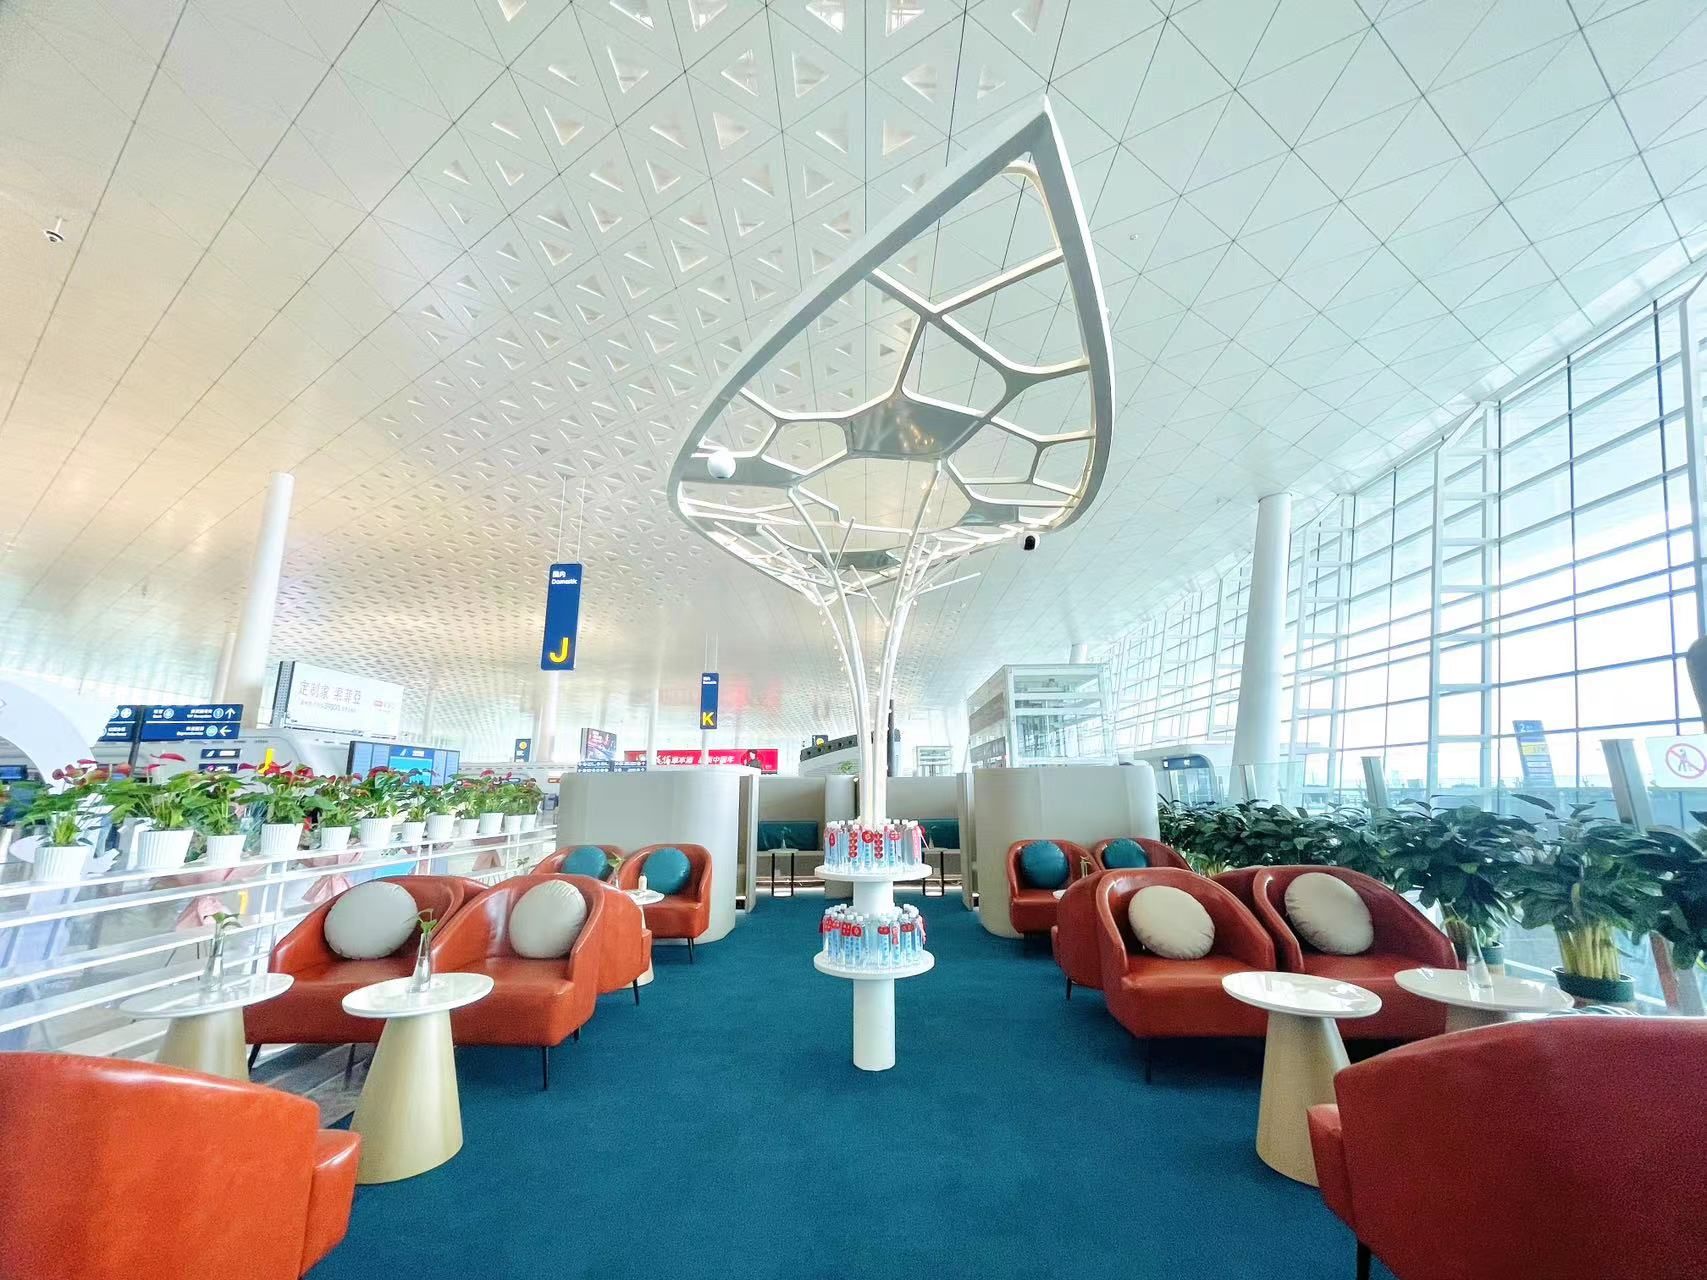 武汉天河机场t3航站楼启用新的贵宾接待处